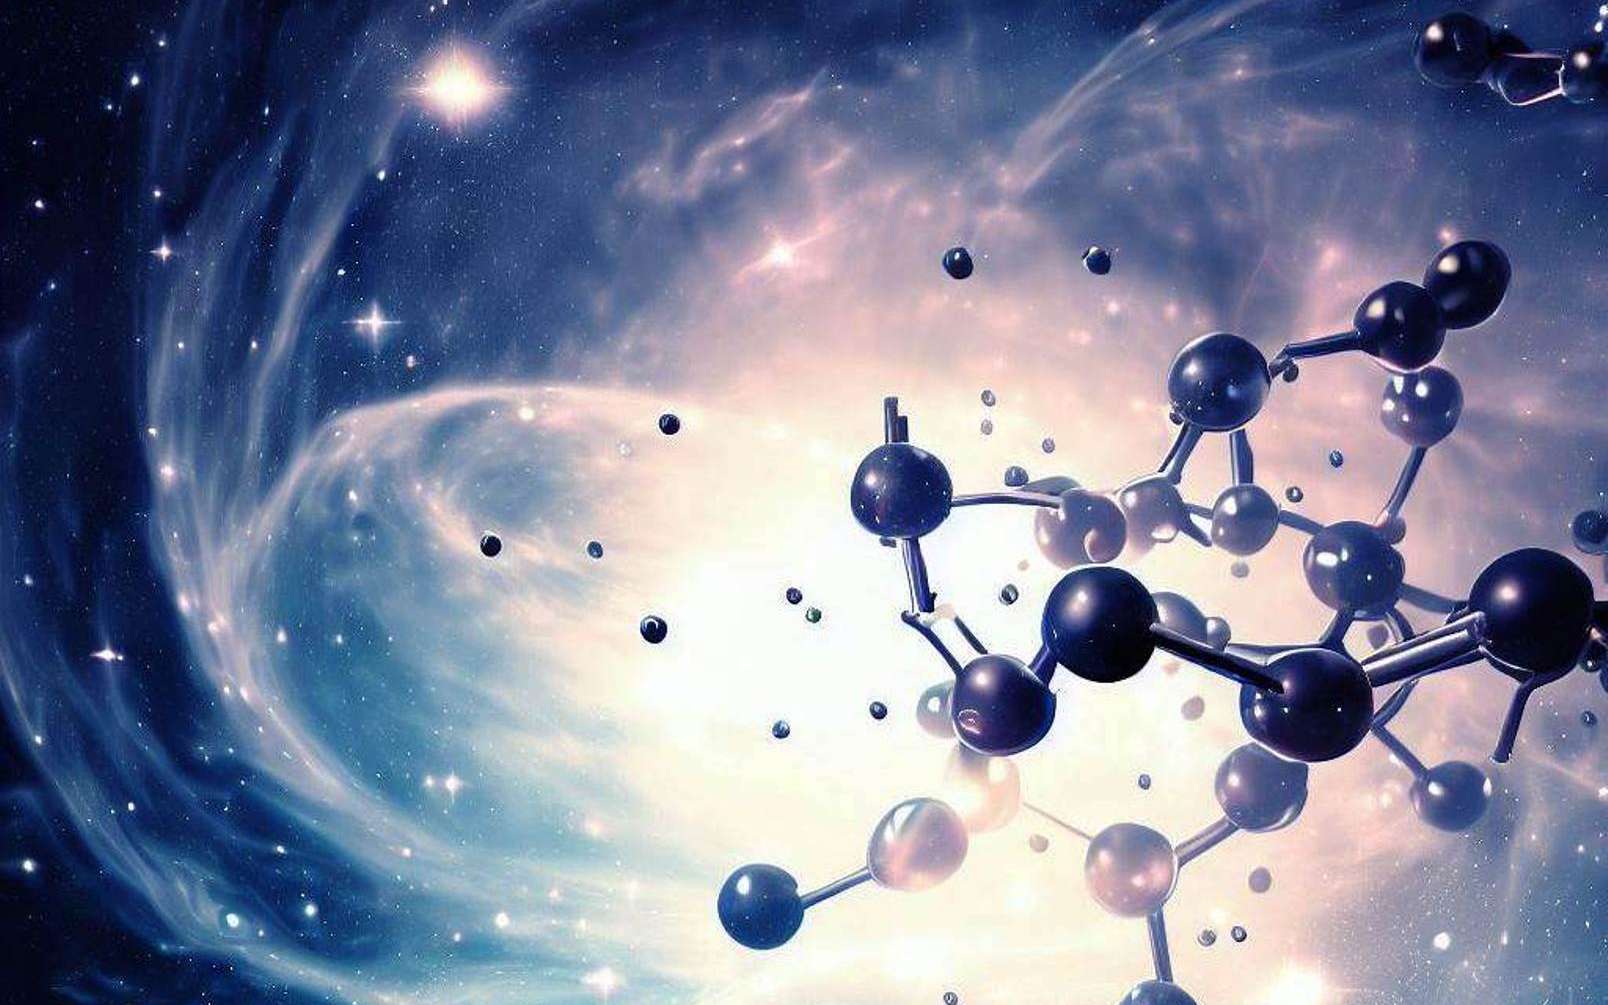 Le James-Webb détecte des molécules organiques dans l'Univers il y a 12 milliards d'années